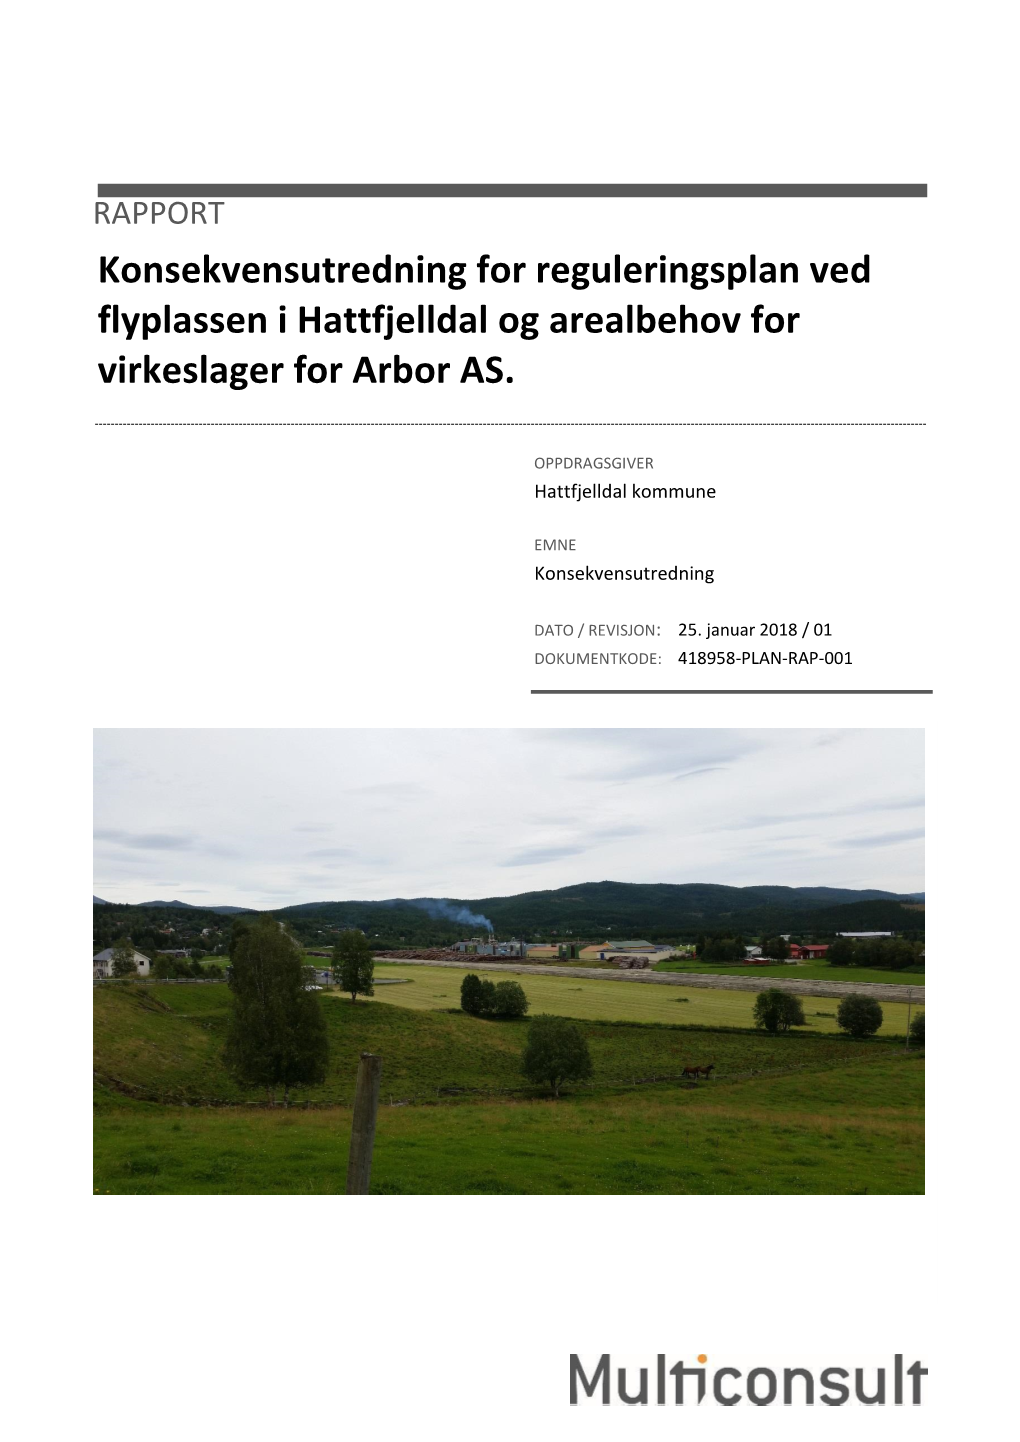 RAPPORT Konsekvensutredning for Reguleringsplan Ved Flyplassen I Hattfjelldal Og Arealbehov for Virkeslager for Arbor AS